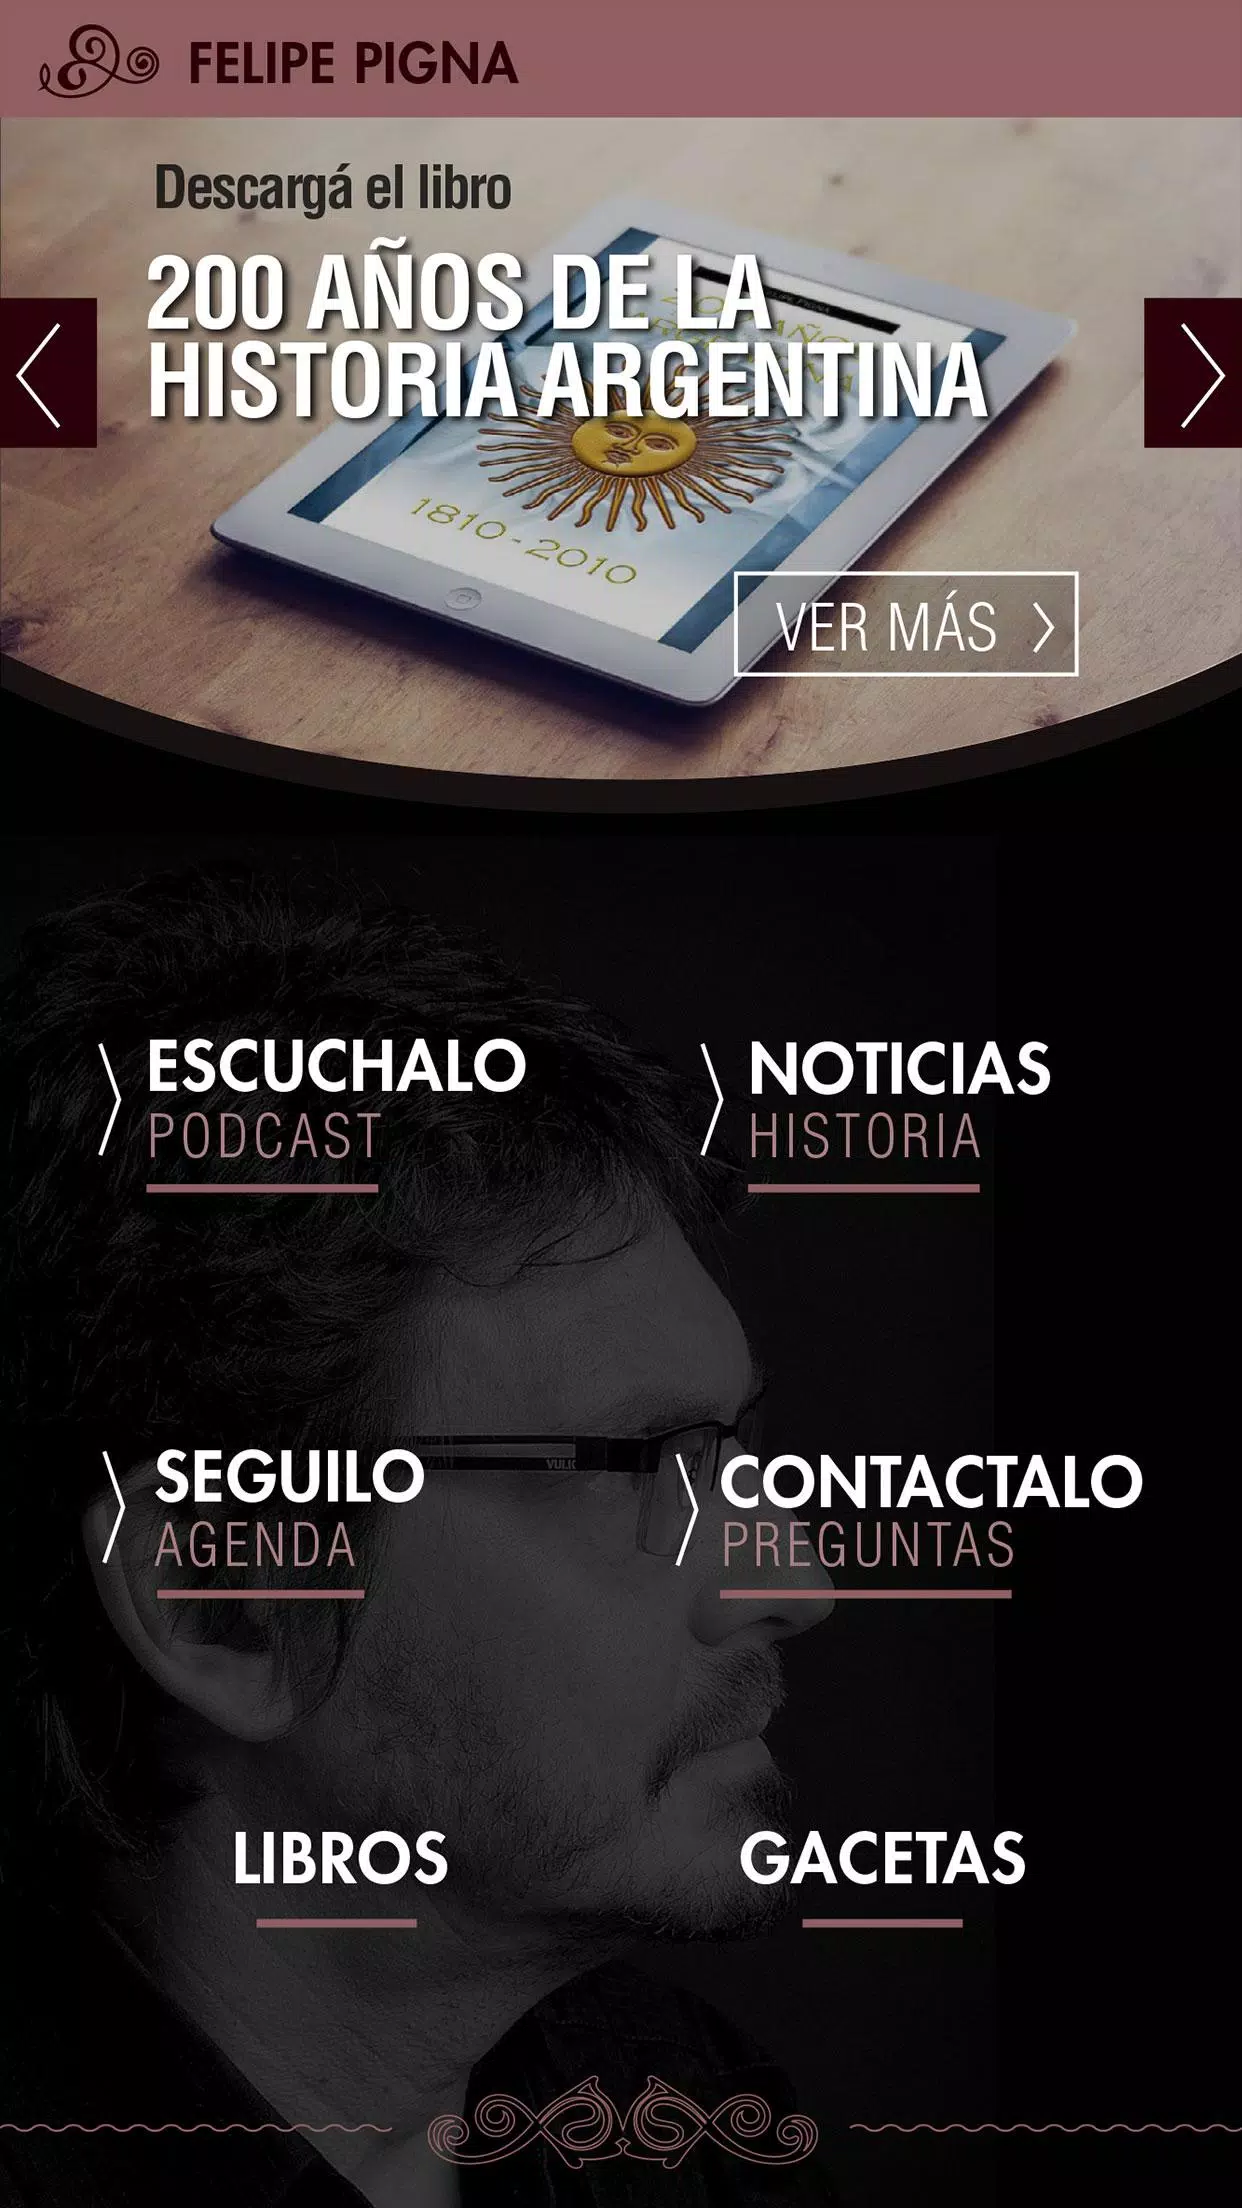 Historia - Felipe Pigna APK for Android Download